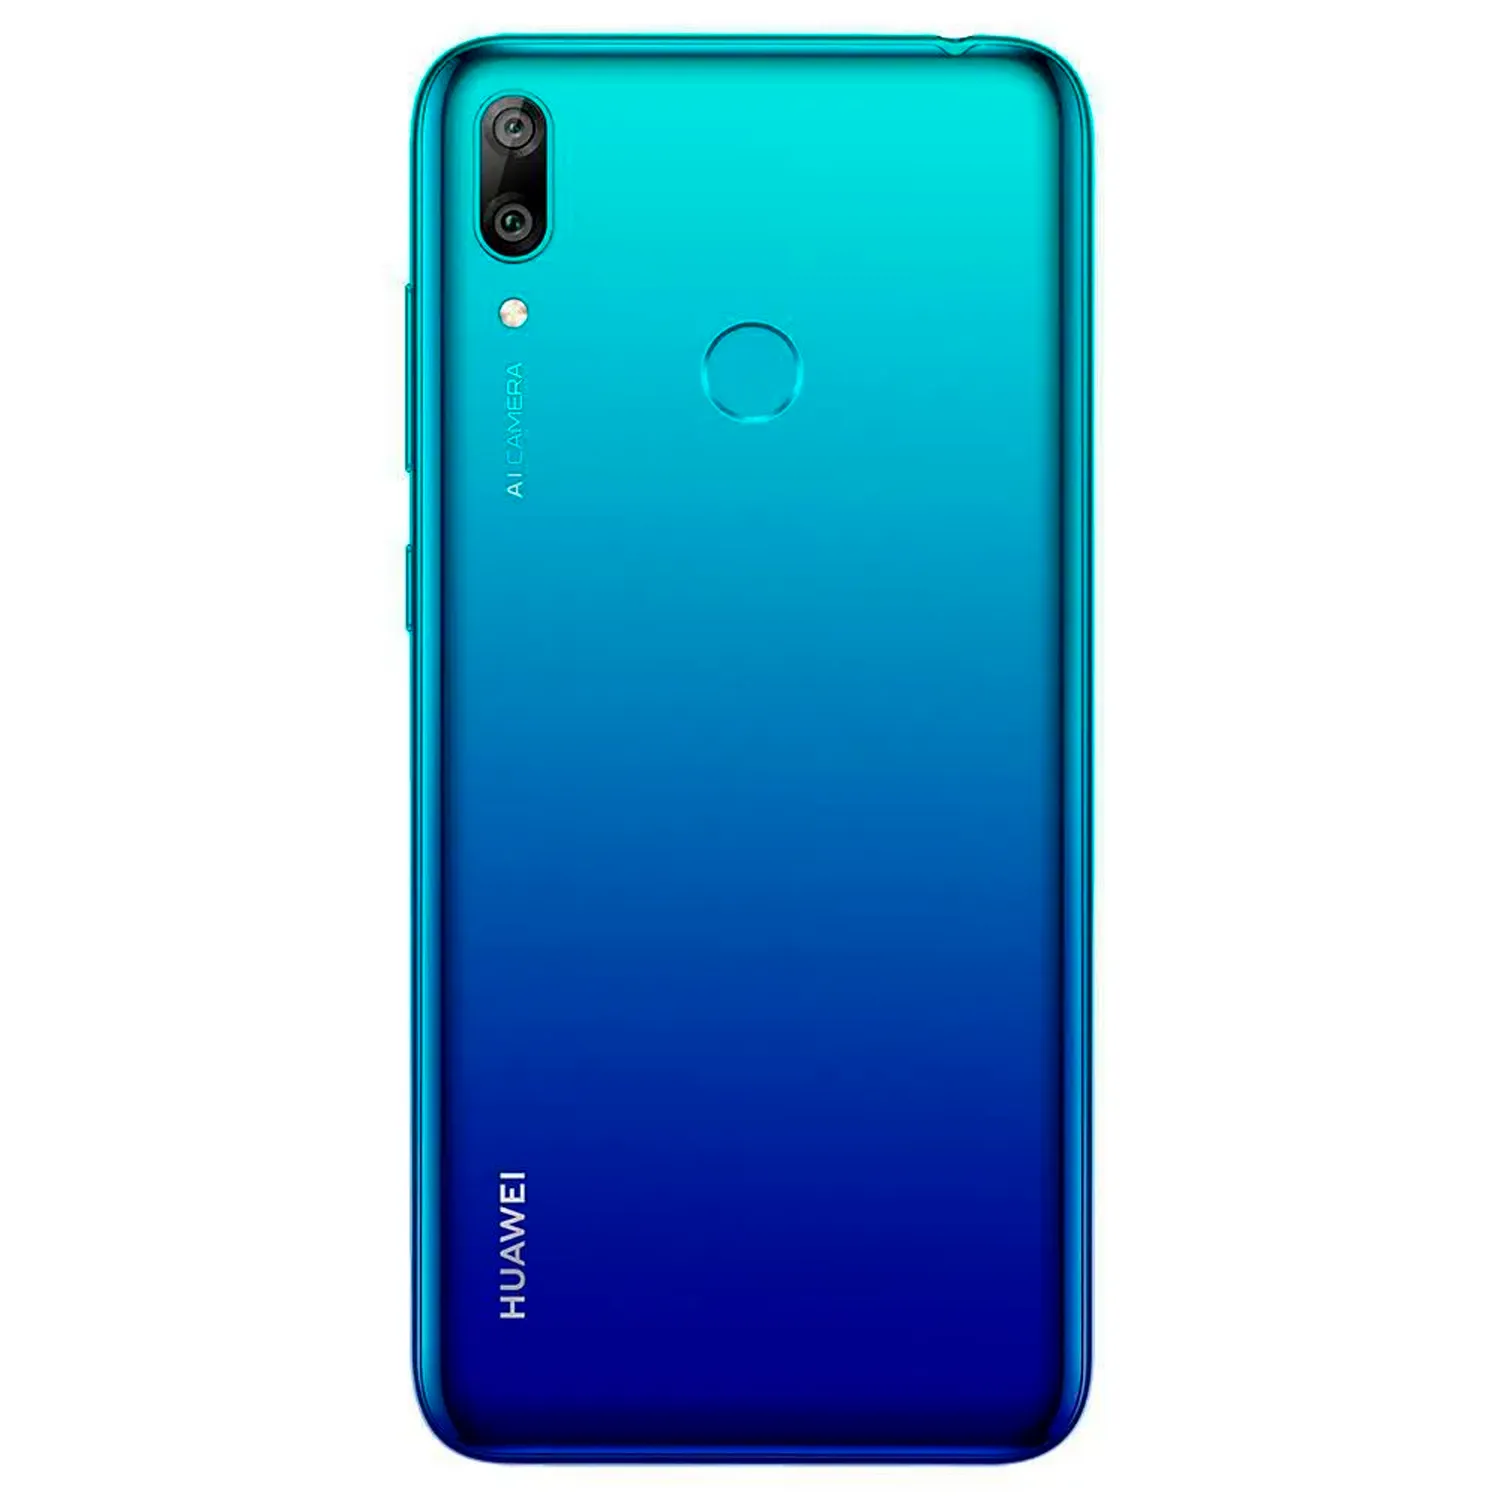 Celular Huawei Y7 2019 Azul 32GB + OBSEQUIO